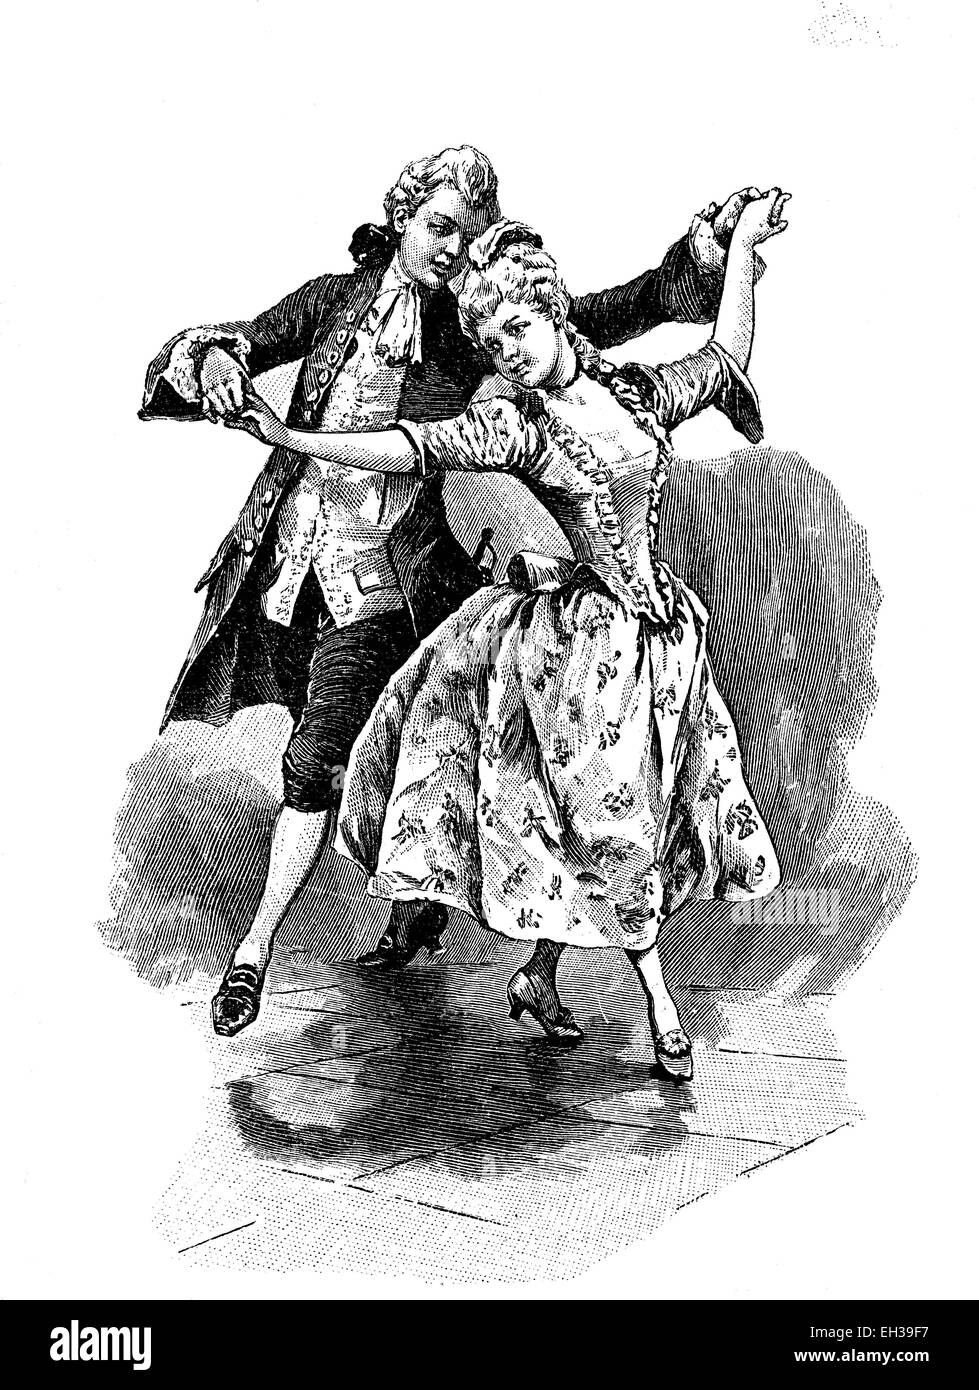 Allemande, una danza procesional, xilografía, 1888 Foto de stock